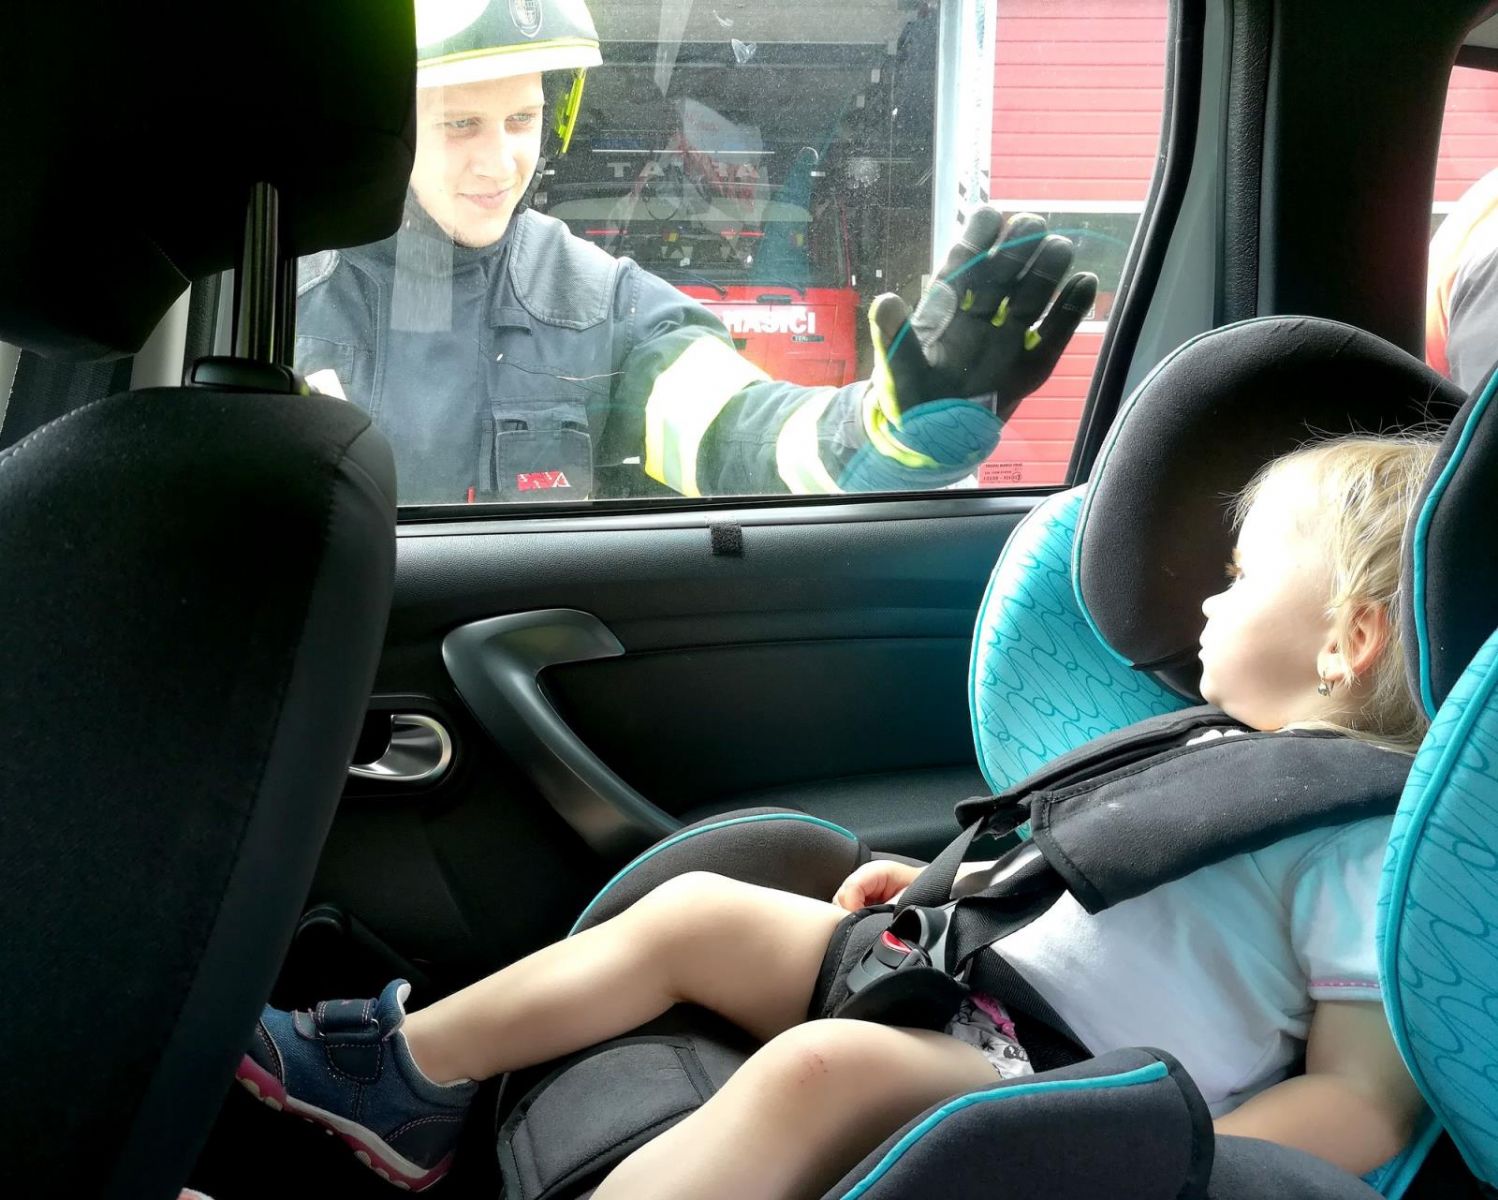 Nechat dítě či zvíře zavřené v autě je nezodpovědné. Následky mohou být fatální